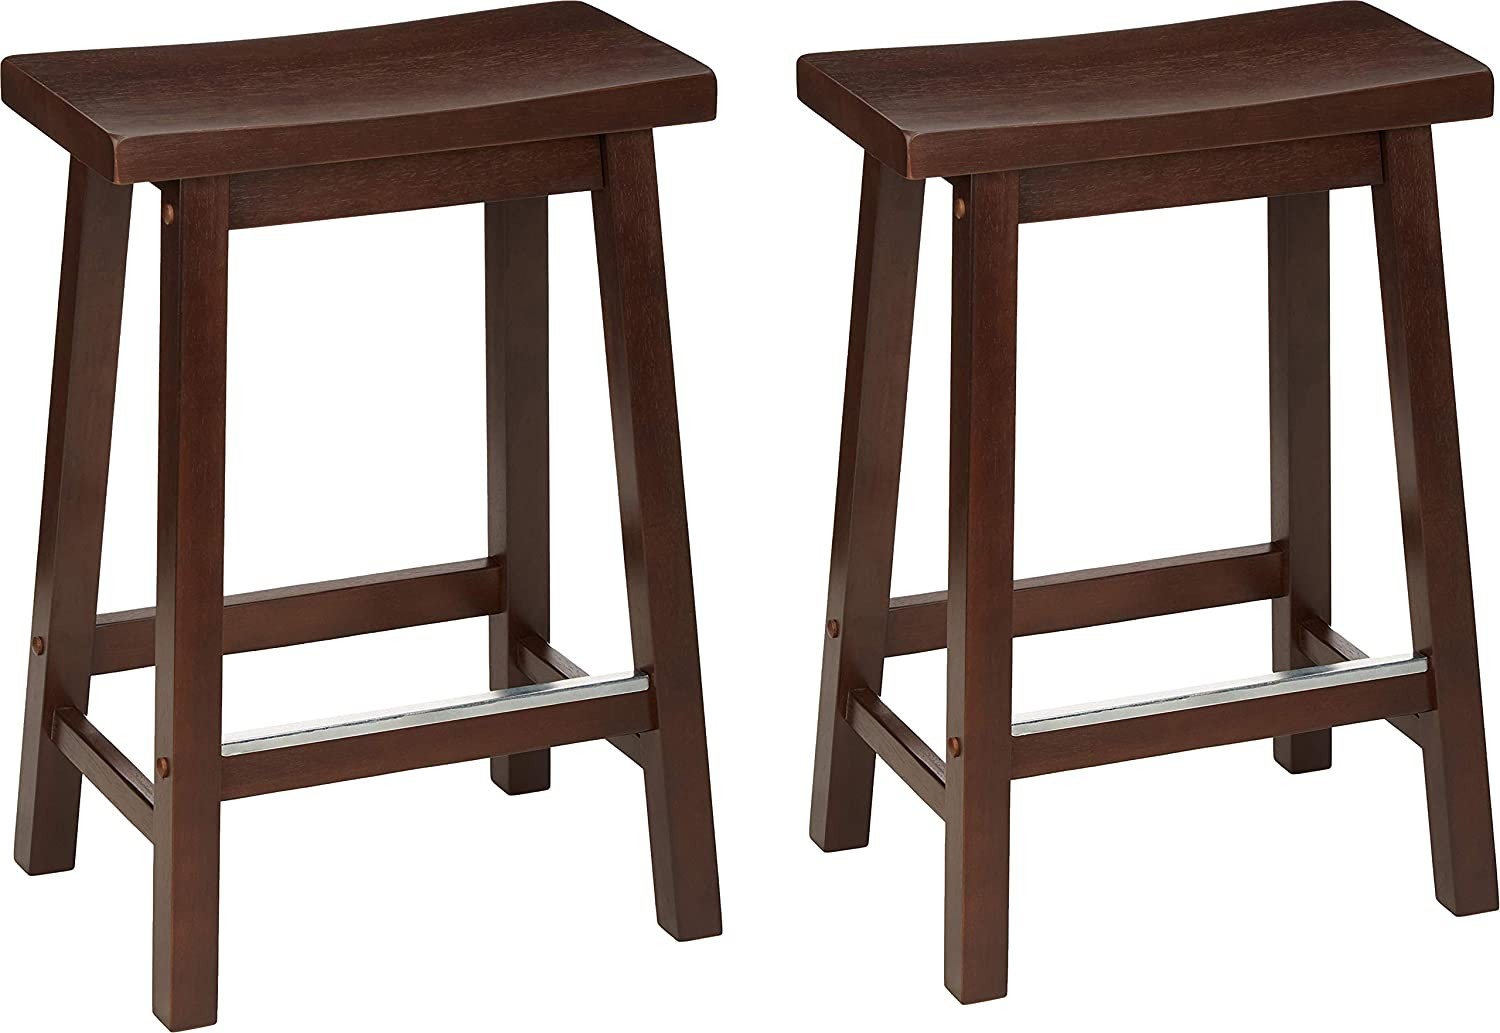 2-Ct 24" Amazon Basics Solid Wood Saddle-Seat Kitchen Counter-Height Stool (Walnut Finish) $49.50